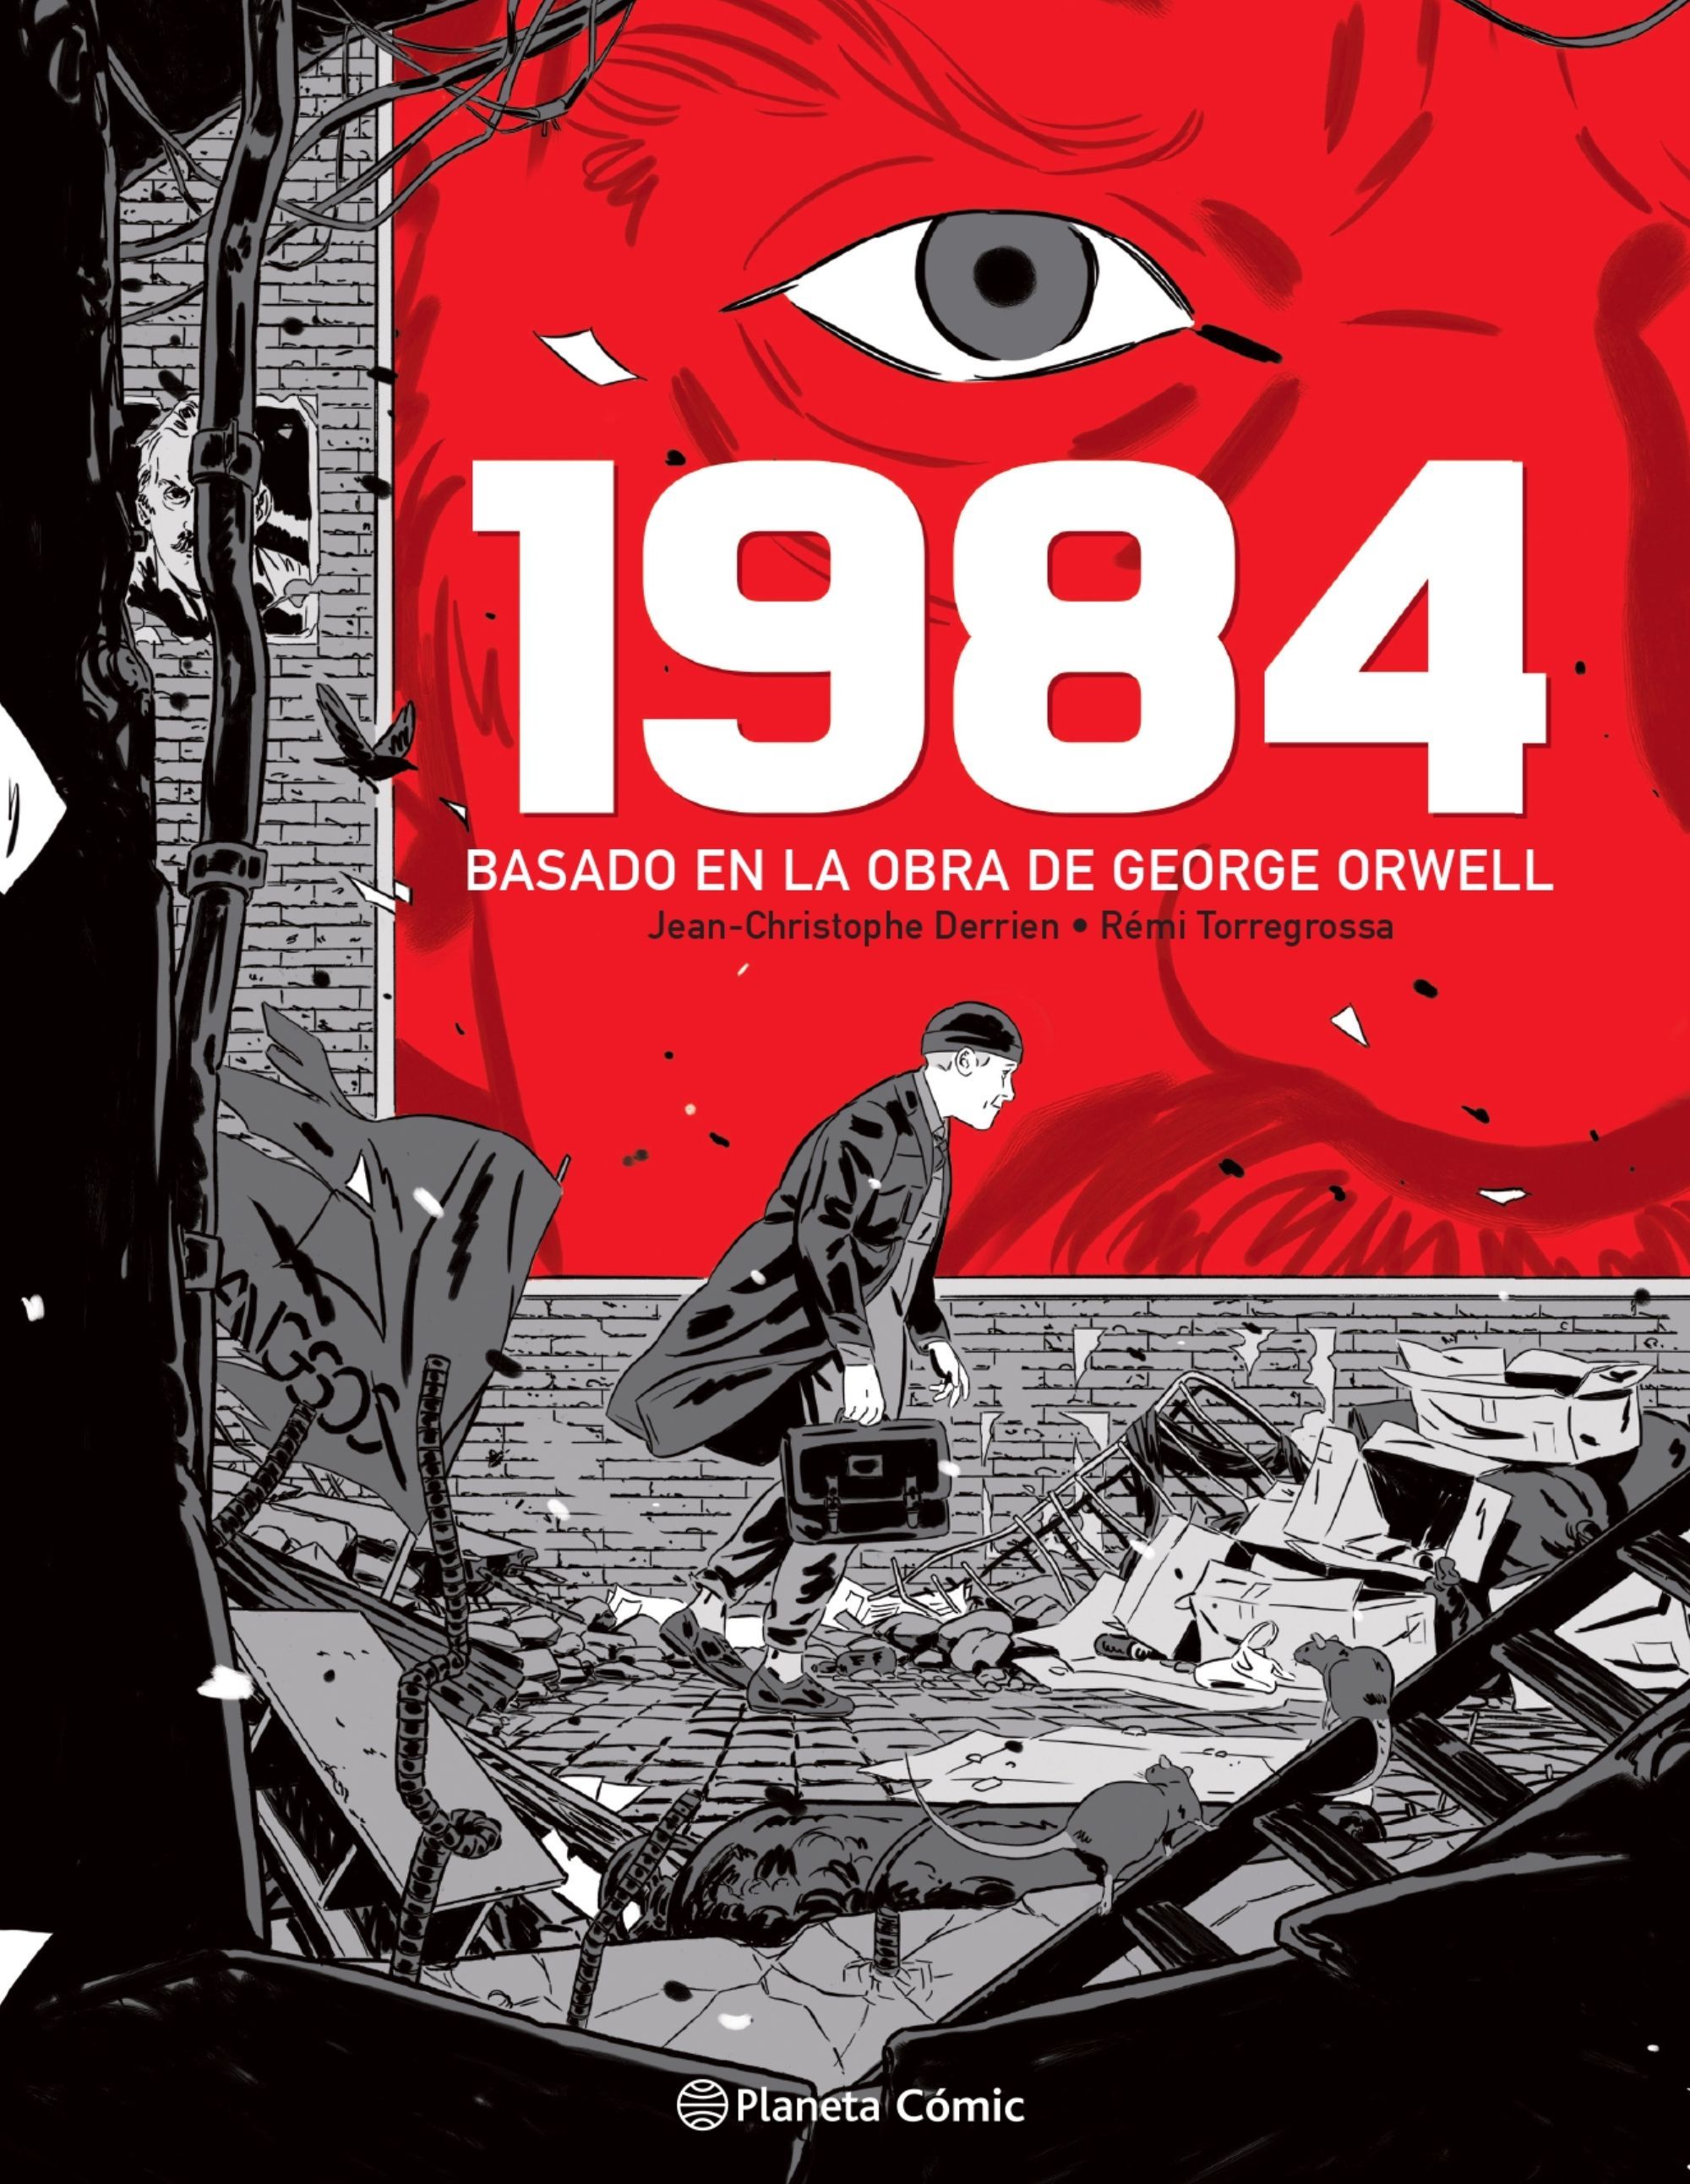 1984. BASADO EN LA OBRA DE GEORGE ORWELL